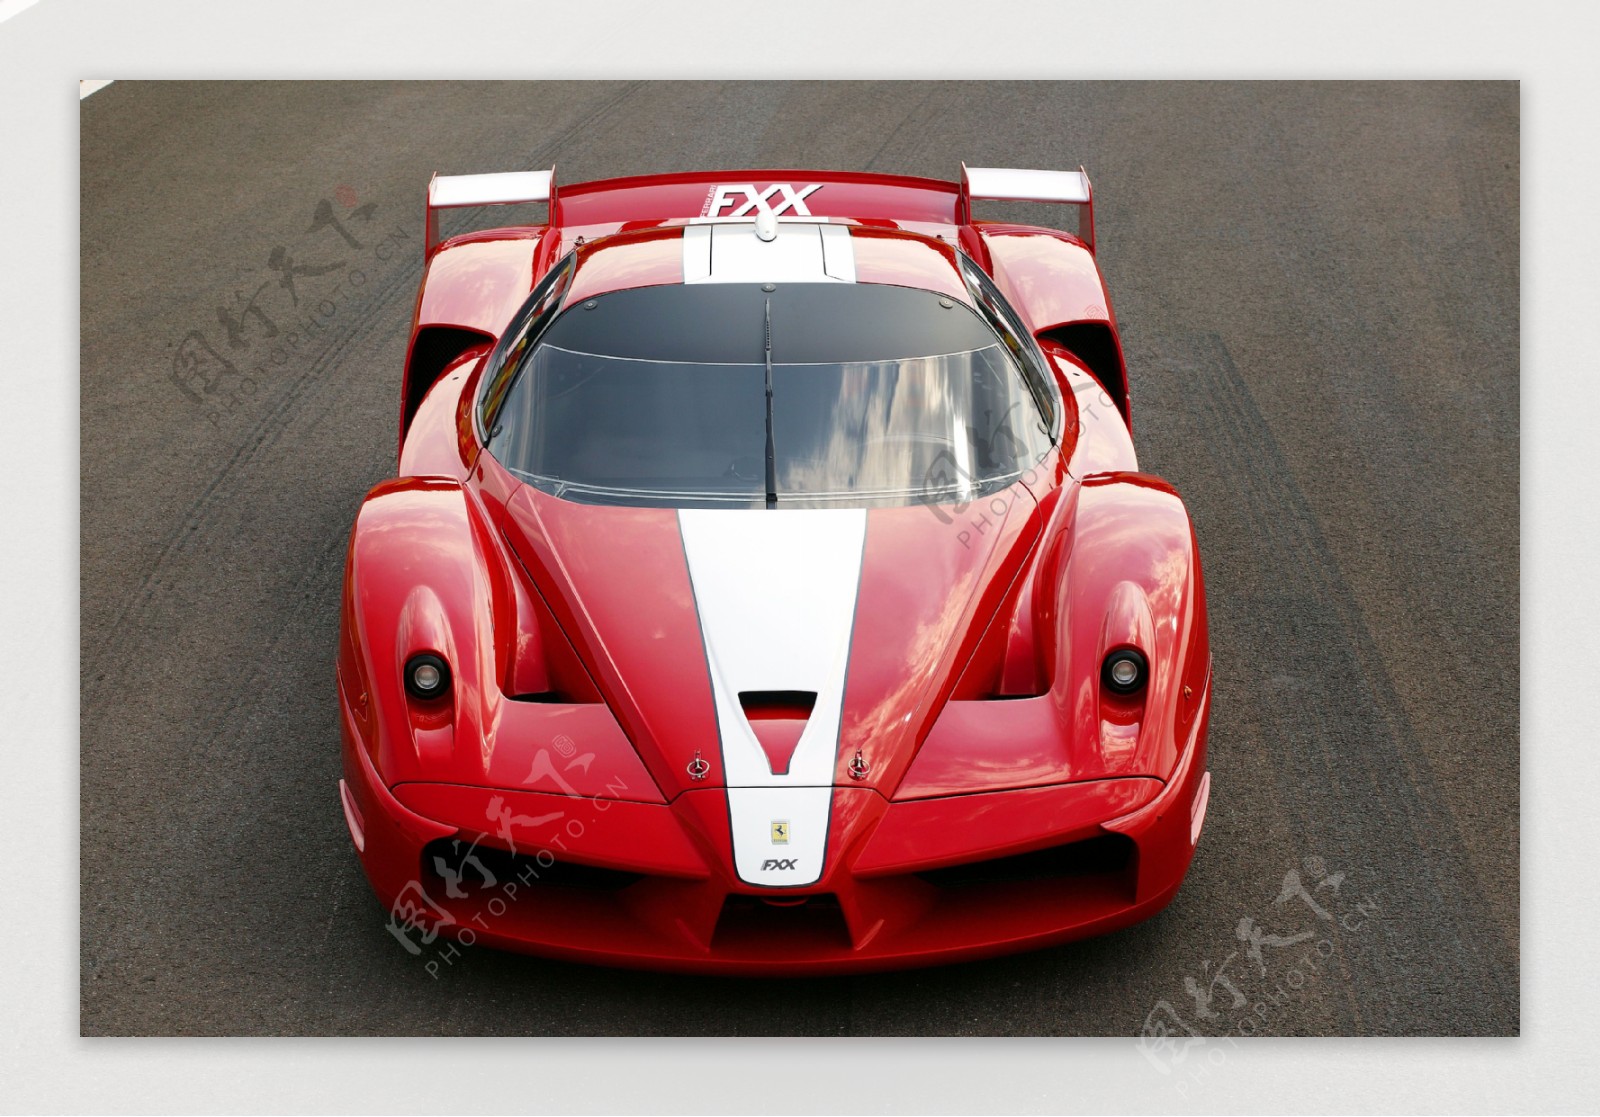 法拉利fxx限量版红色跑车图片